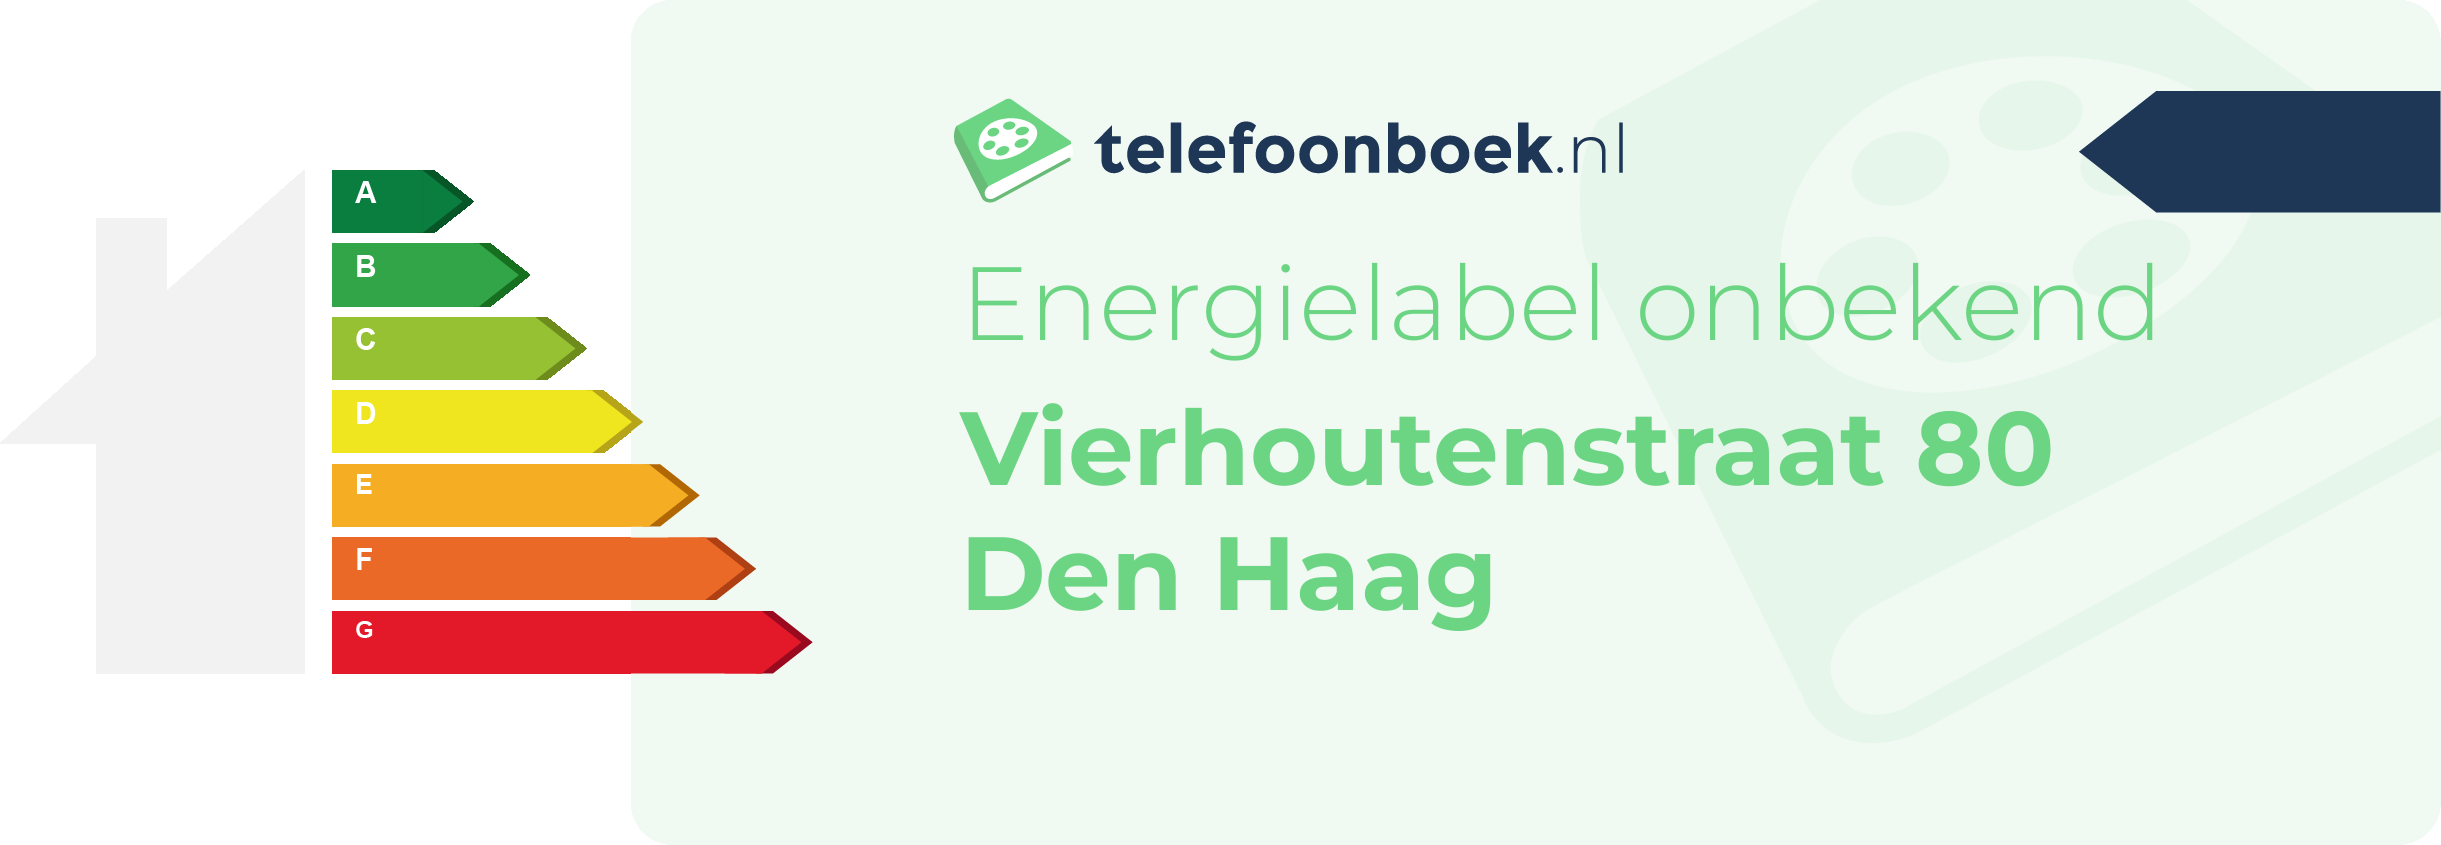 Energielabel Vierhoutenstraat 80 Den Haag